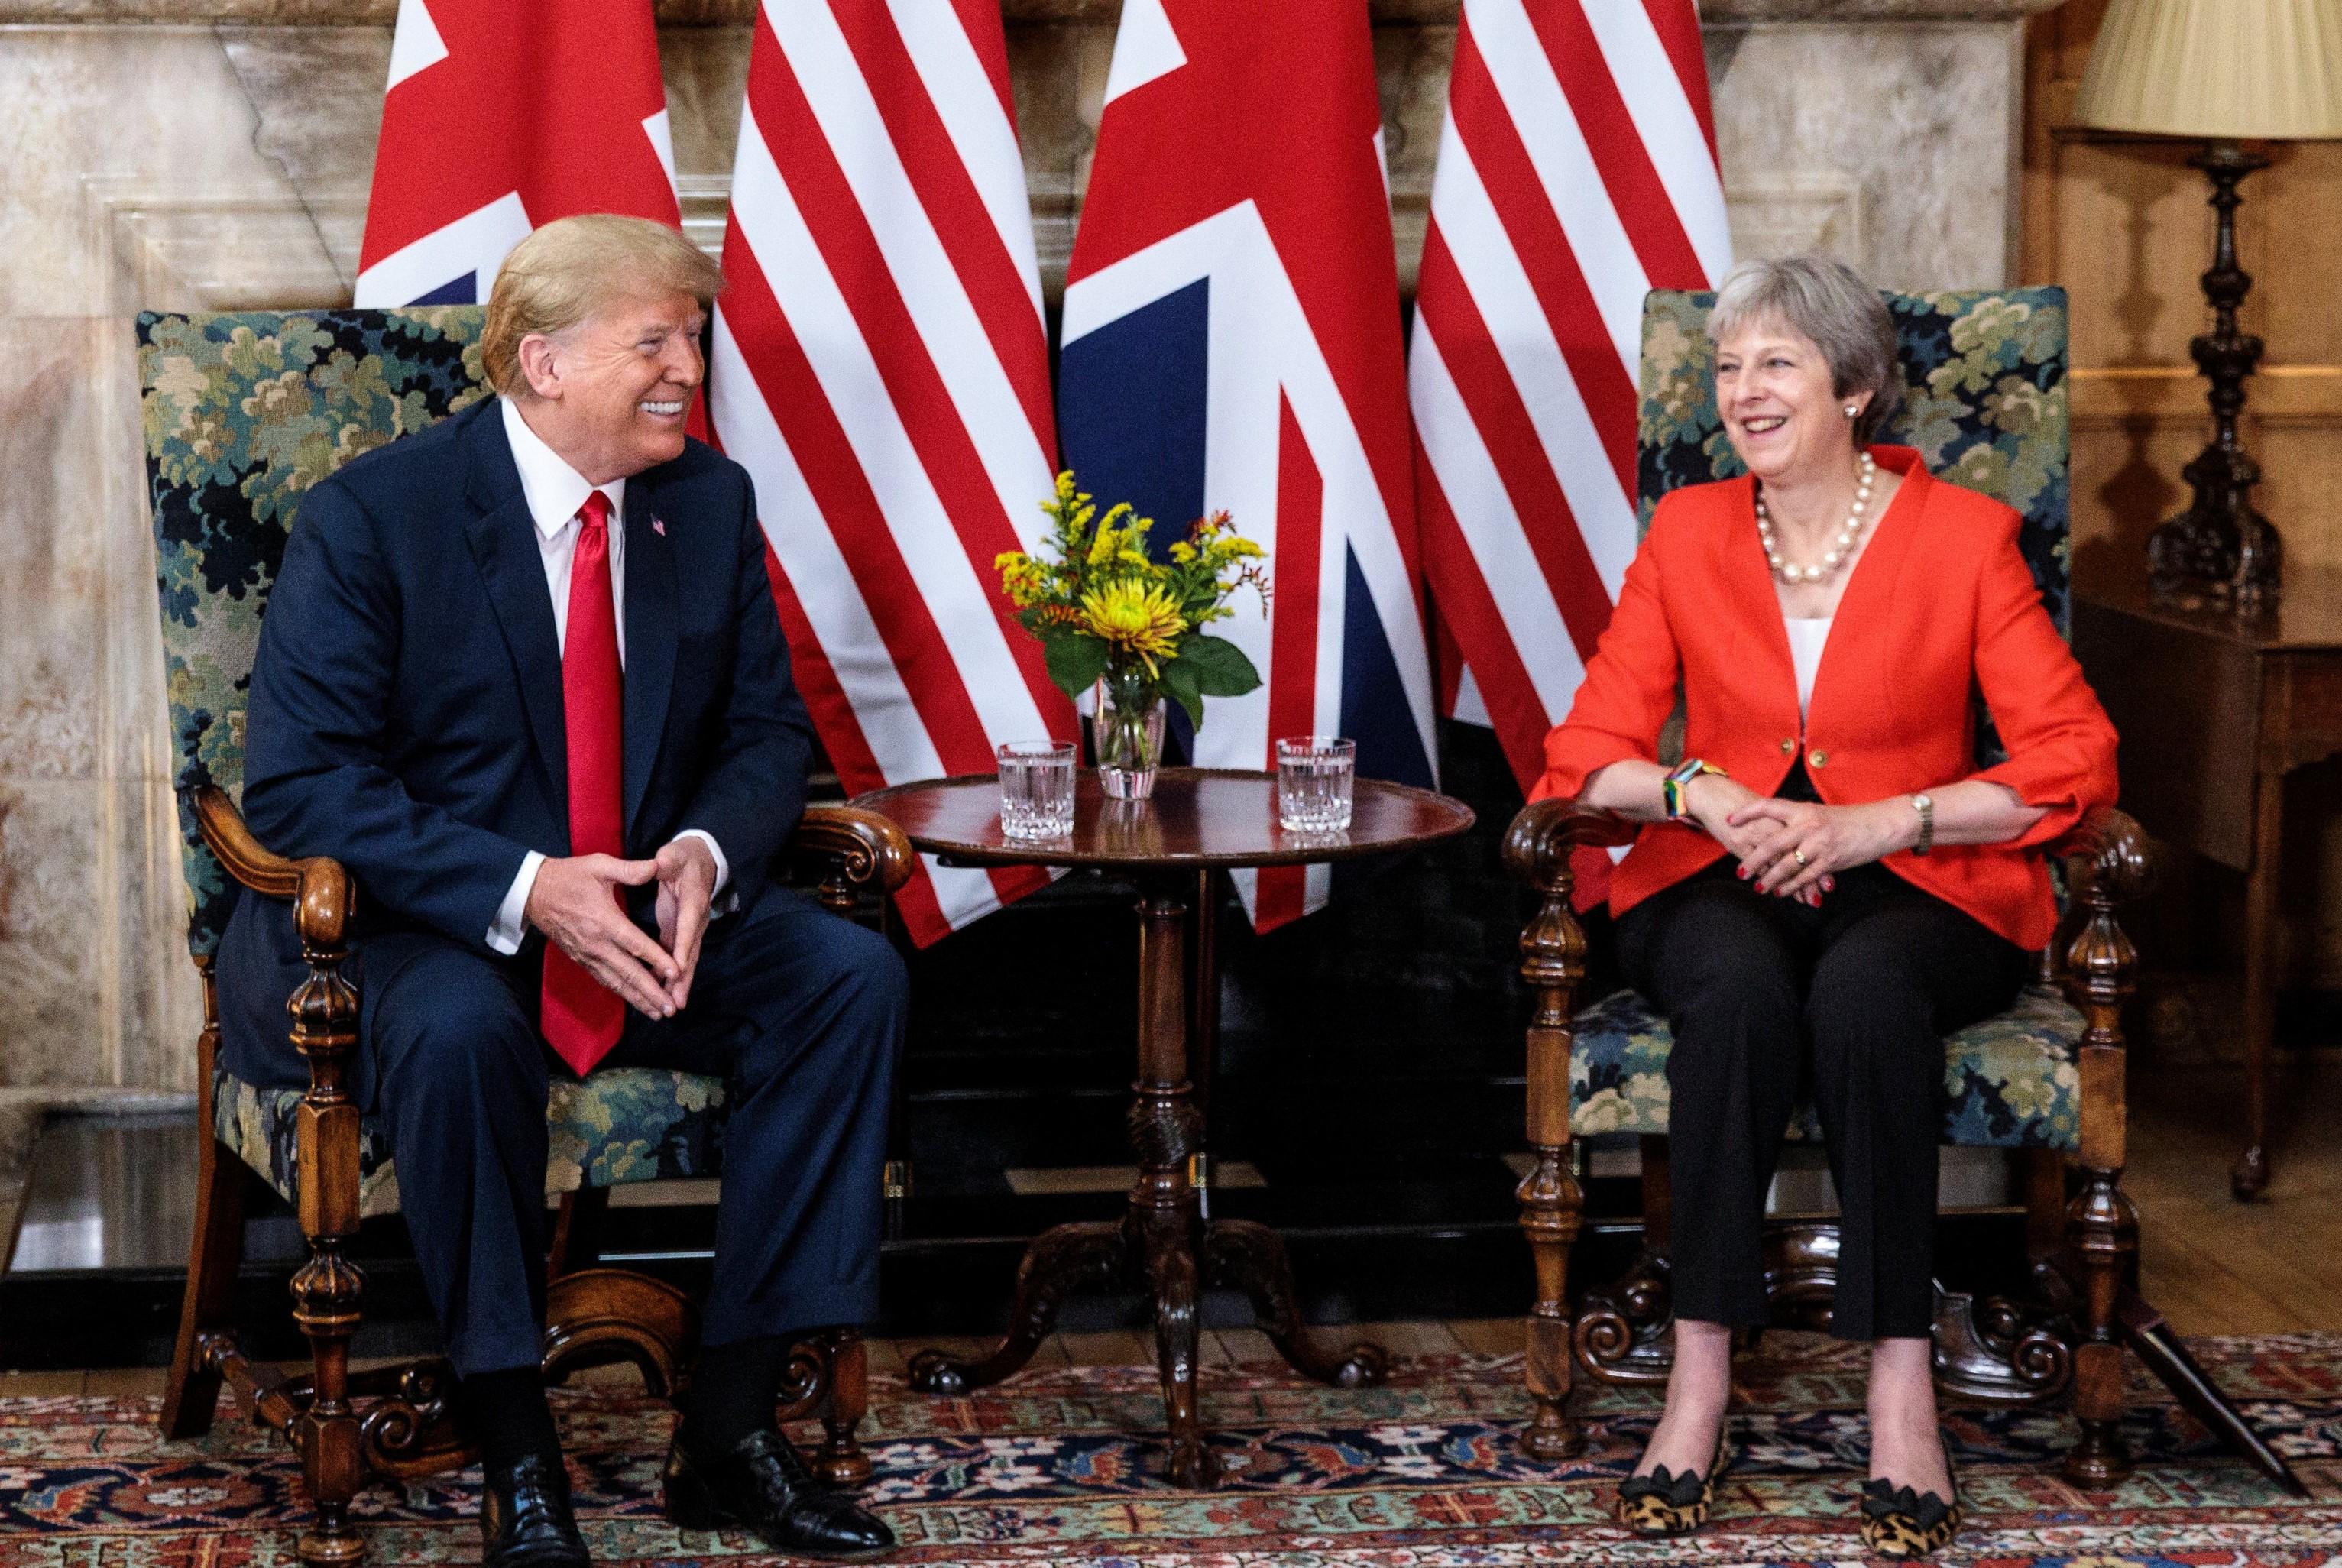 الرئيس الأمريكي دونالد ترامب يلتقي رئيسة الوزراء البريطانية تيريزا ماي في لندن، 13 يوليو 2018. رويترز